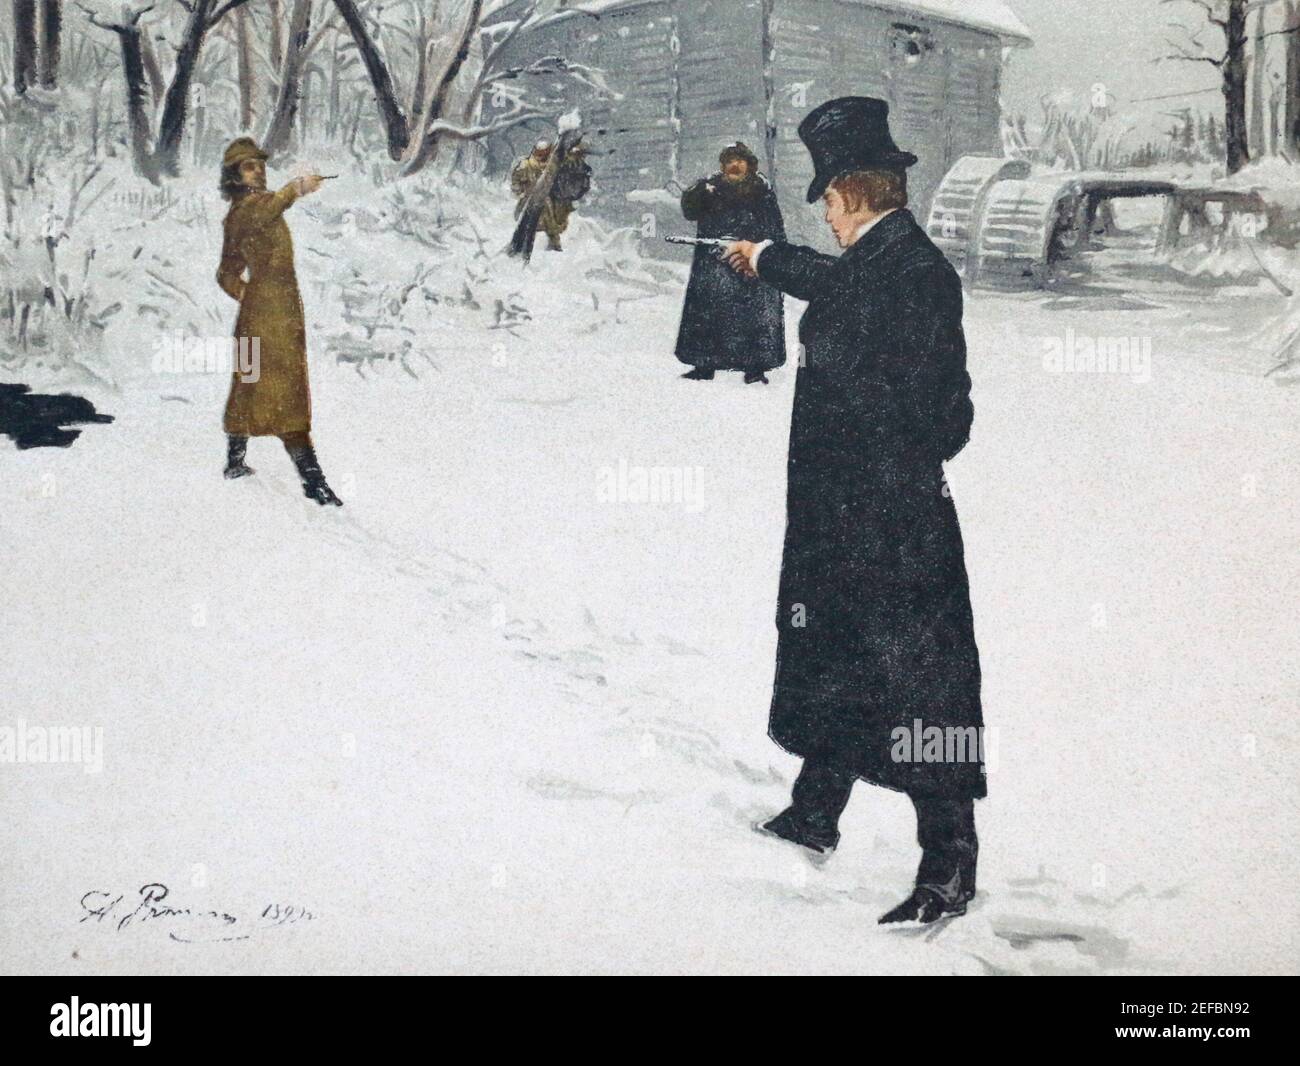 Lenskys Duell mit Onegin. Illustration für die Arbeit von Alexander Puschkin 'Eugen Onegin'. Aquarell durch Z. B. Repin. Stockfoto